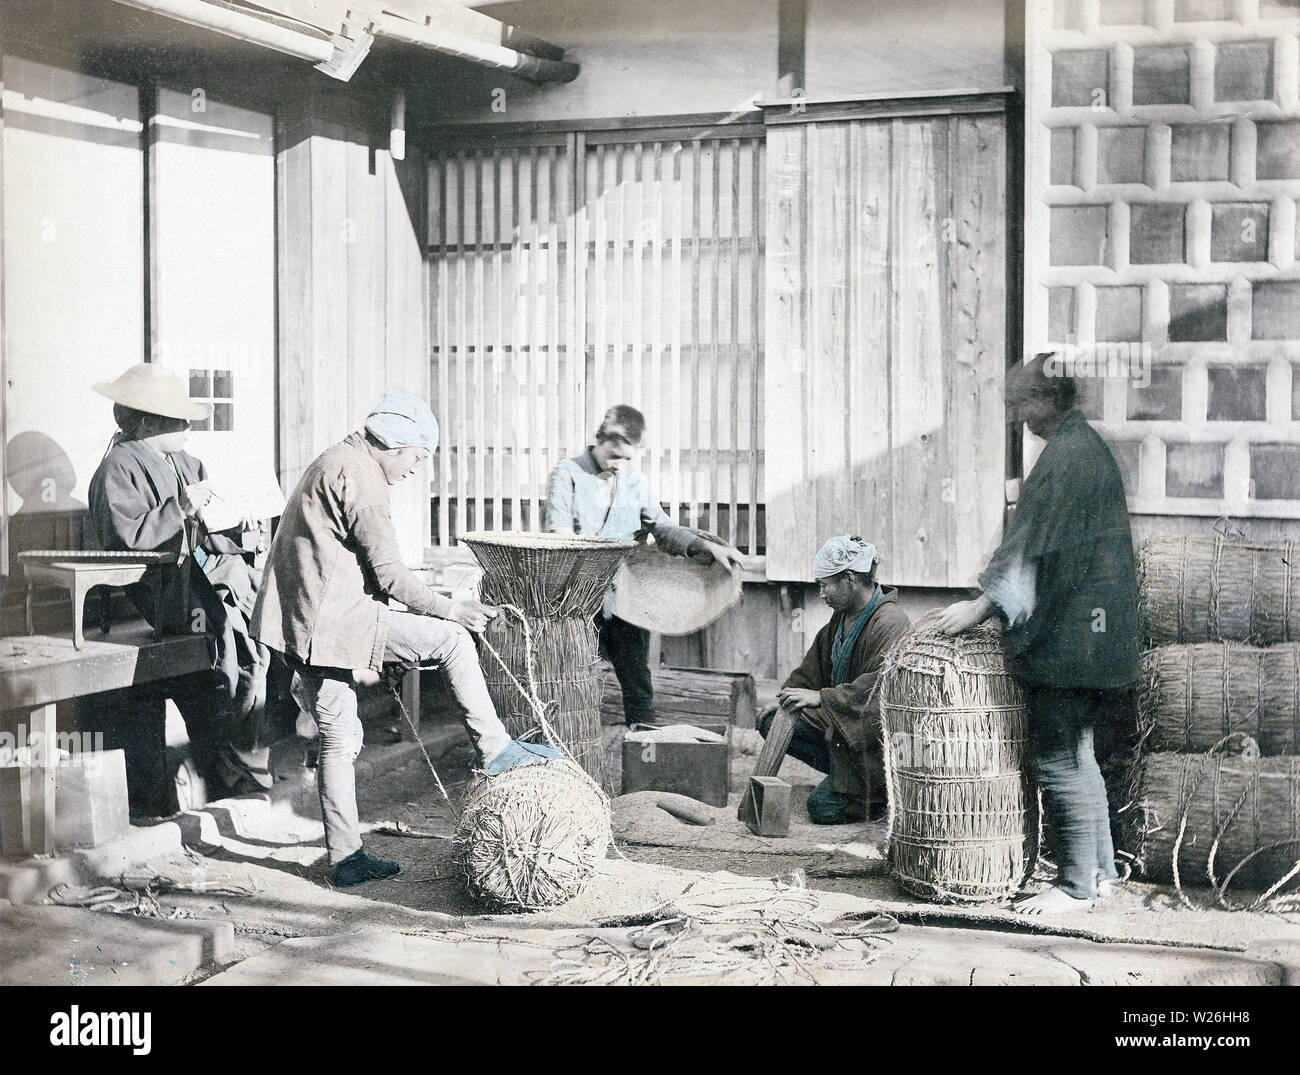 1880s Japan - Verpackung Reis] - zwei Männer im Vordergrund sind Verpackung  Reis im Stroh Taschen, während der Mann auf der linken Seite die Datensätze  ist. Eine japanische Soroban (Abacus) liegt auf